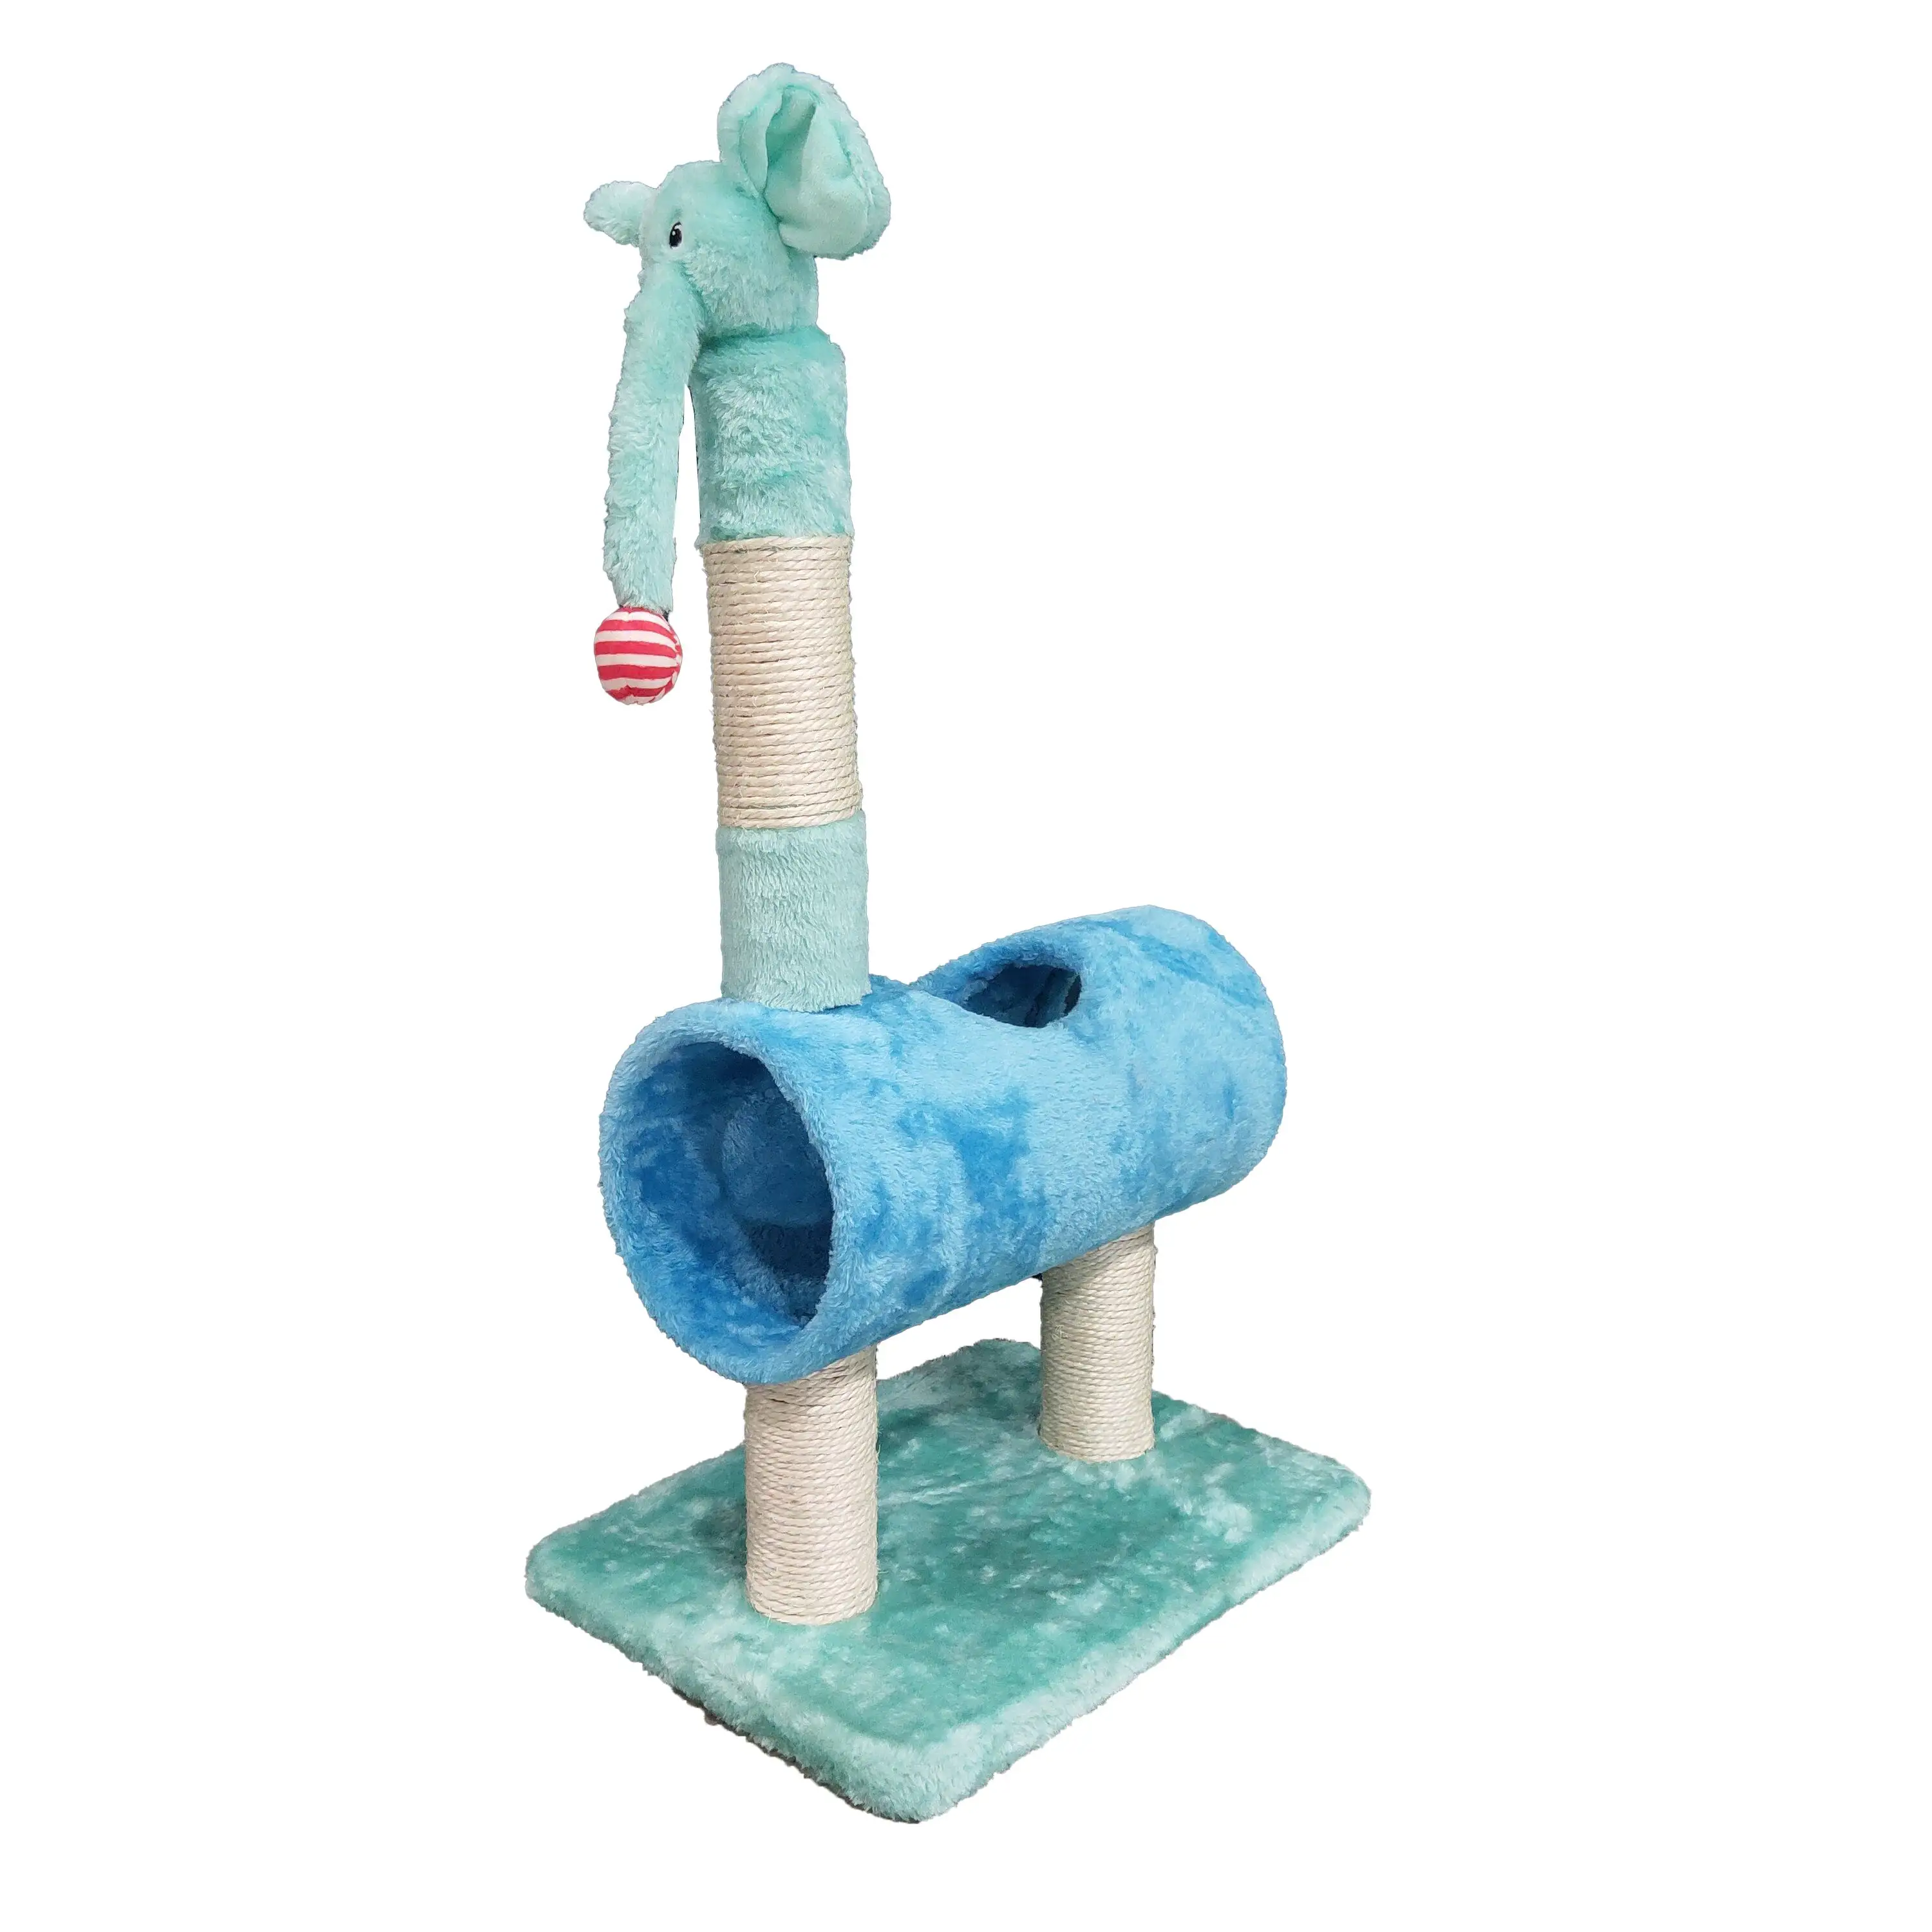 U-PETS स्वयं के डिजाइन के लिए हाथी आलीशान खिलौने बिल्ली पेड़ की लकड़ी